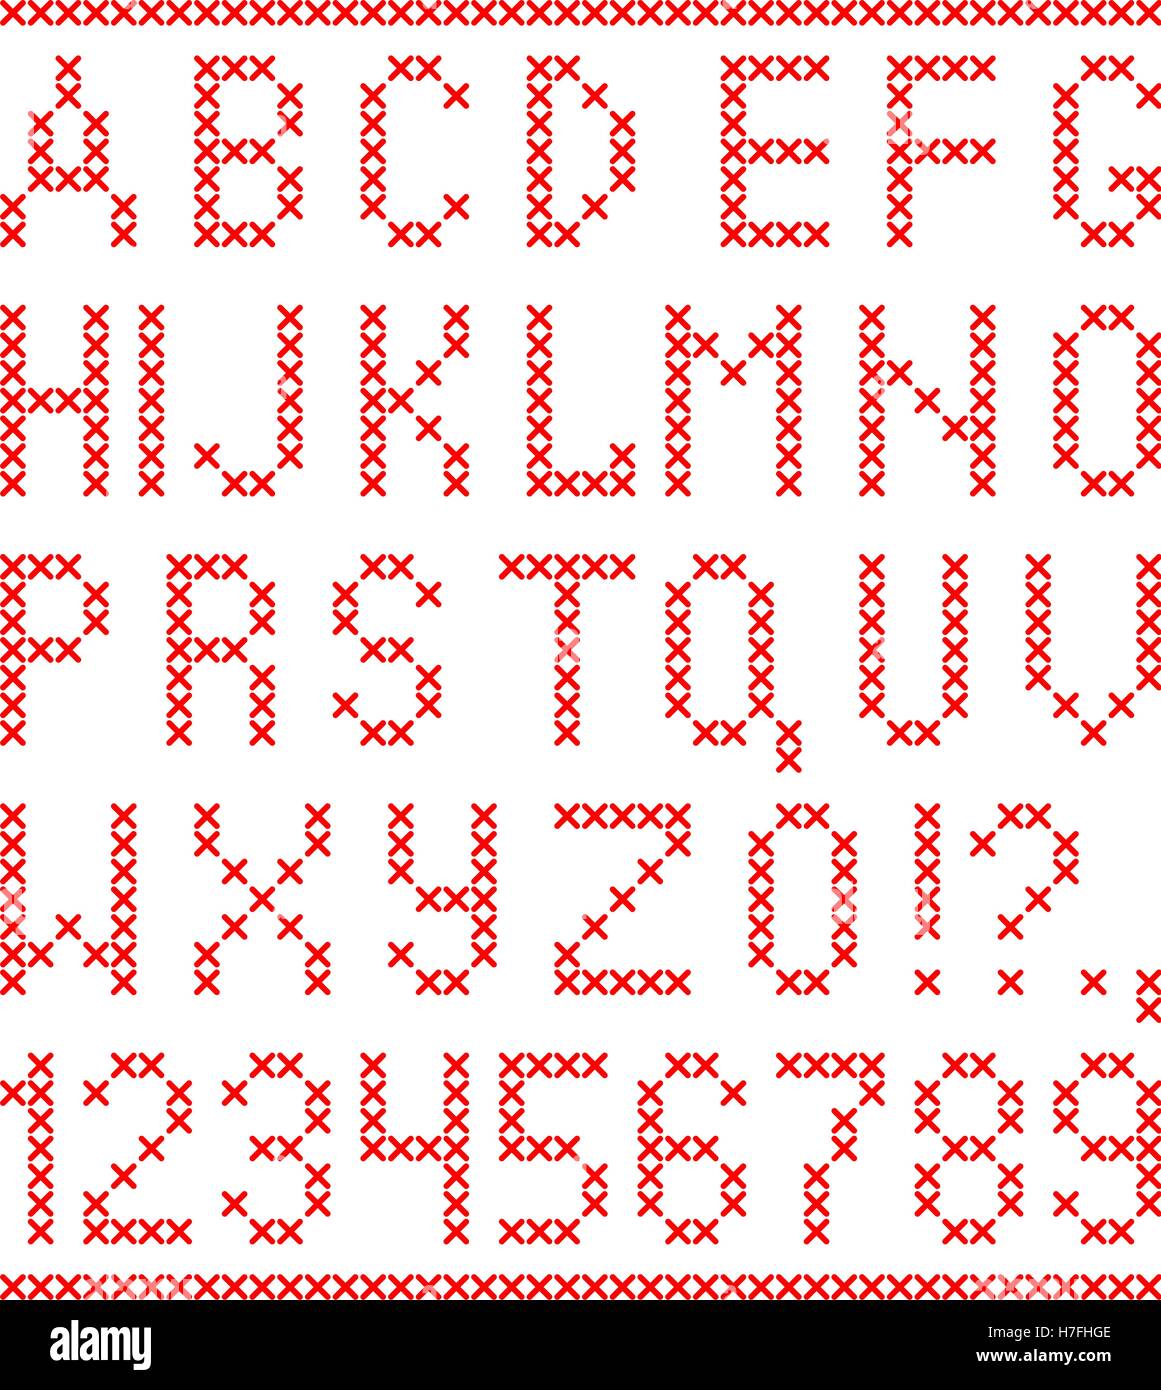 Bestickt von cross Stitch englische Alphabet mit Zahlen und Symbolen, die isoliert auf weißem Hintergrund. Stock Vektor